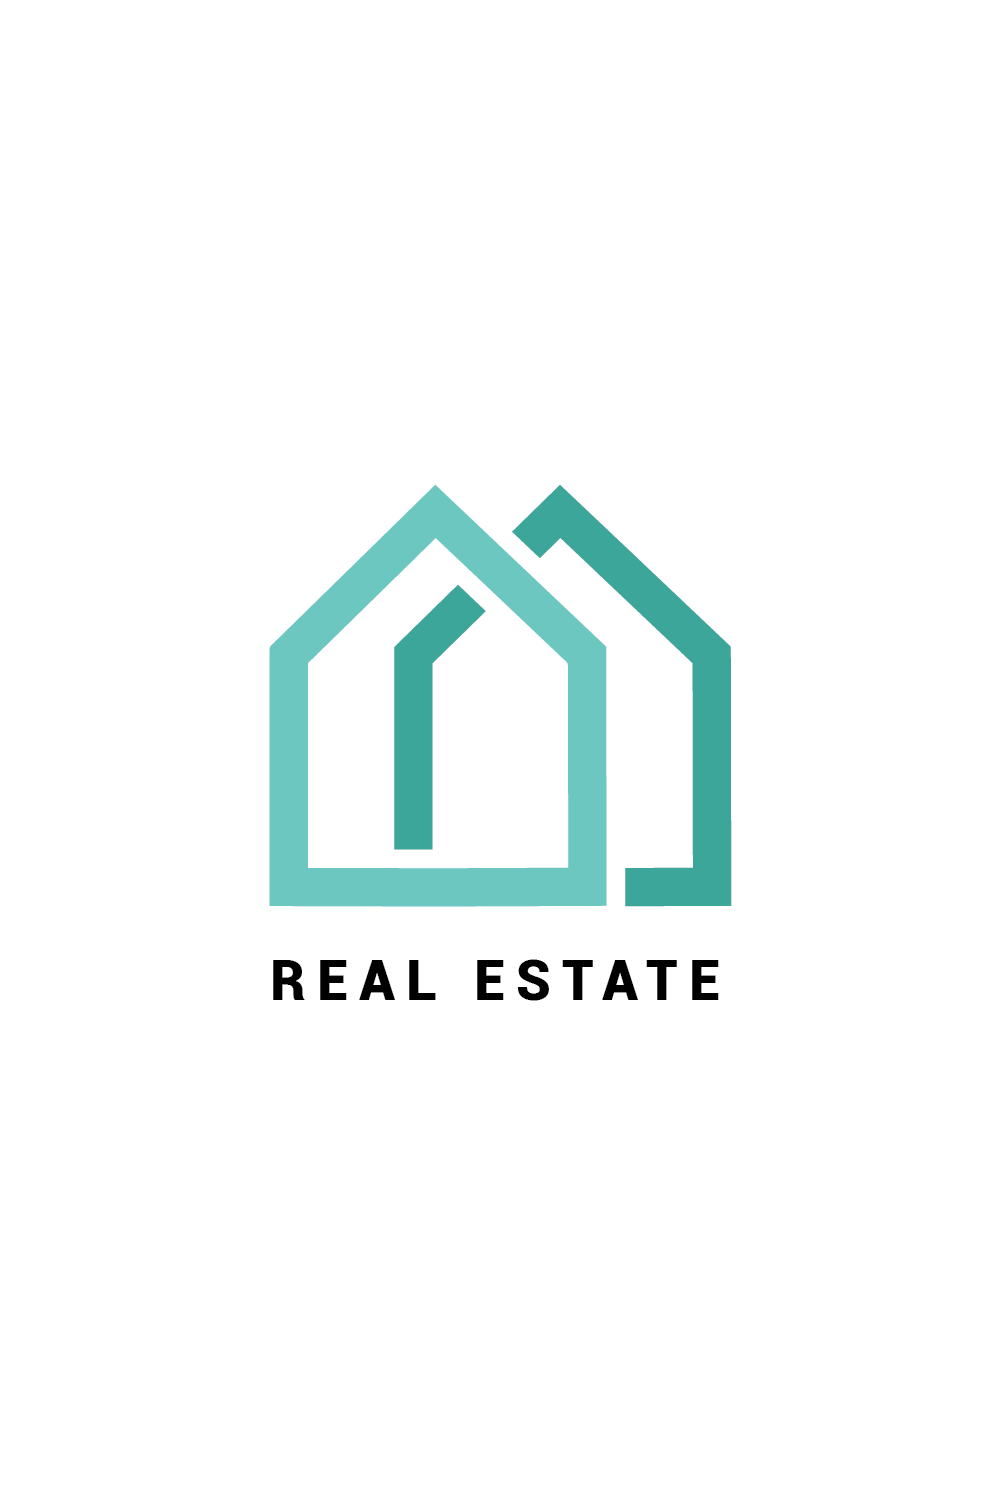 Real estate company logo, Modern home vector logo art, Construction logo design template Pro Vector pinterest preview image.